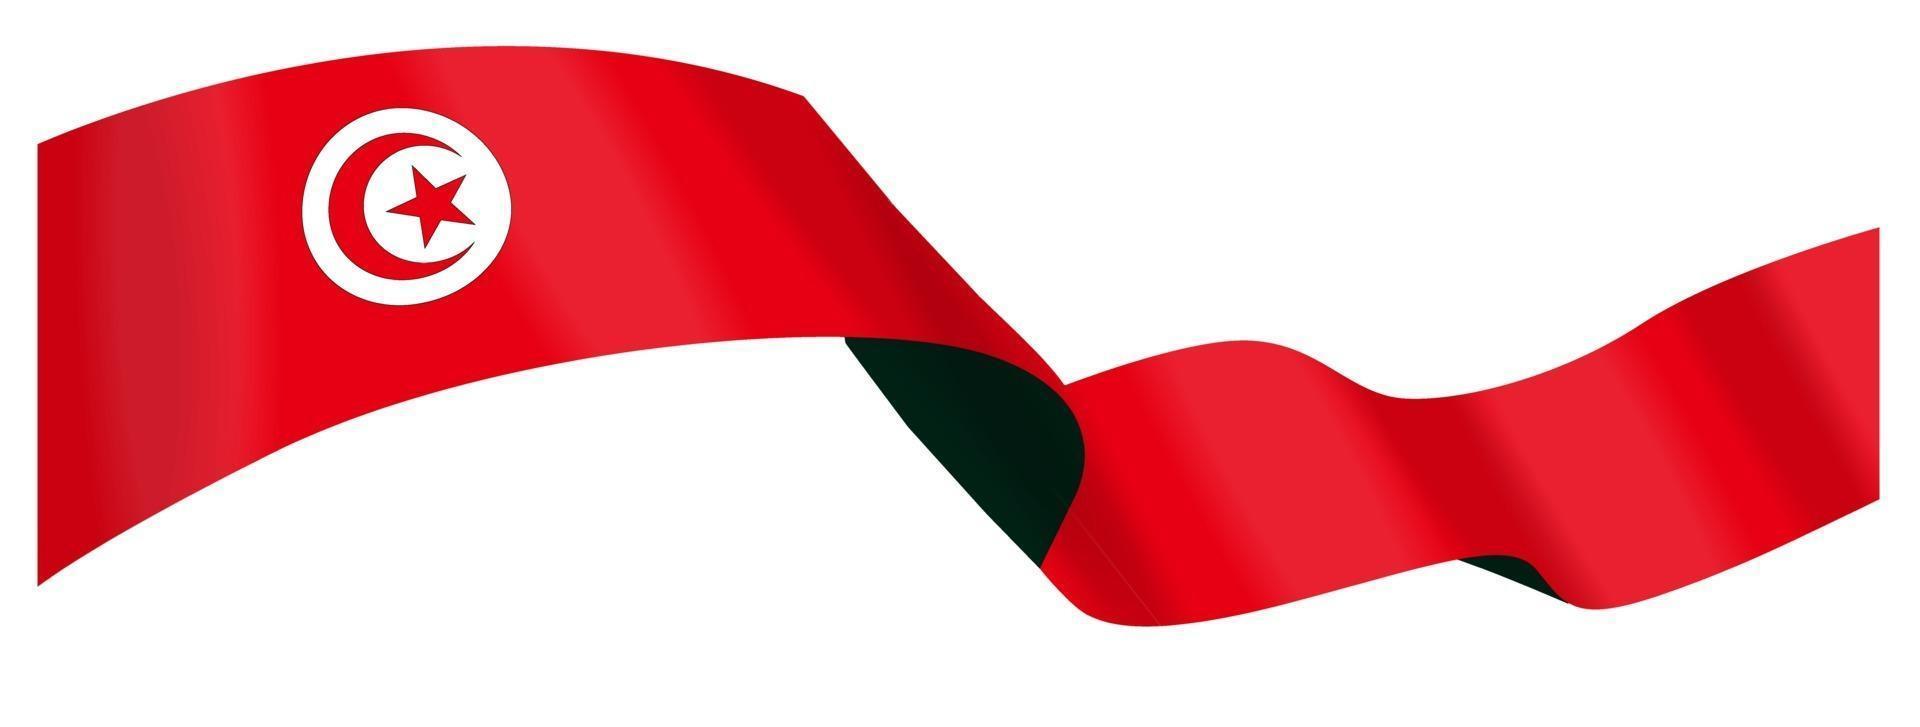 Paquete de imagen vectorial de la bandera nacional de Túnez vector